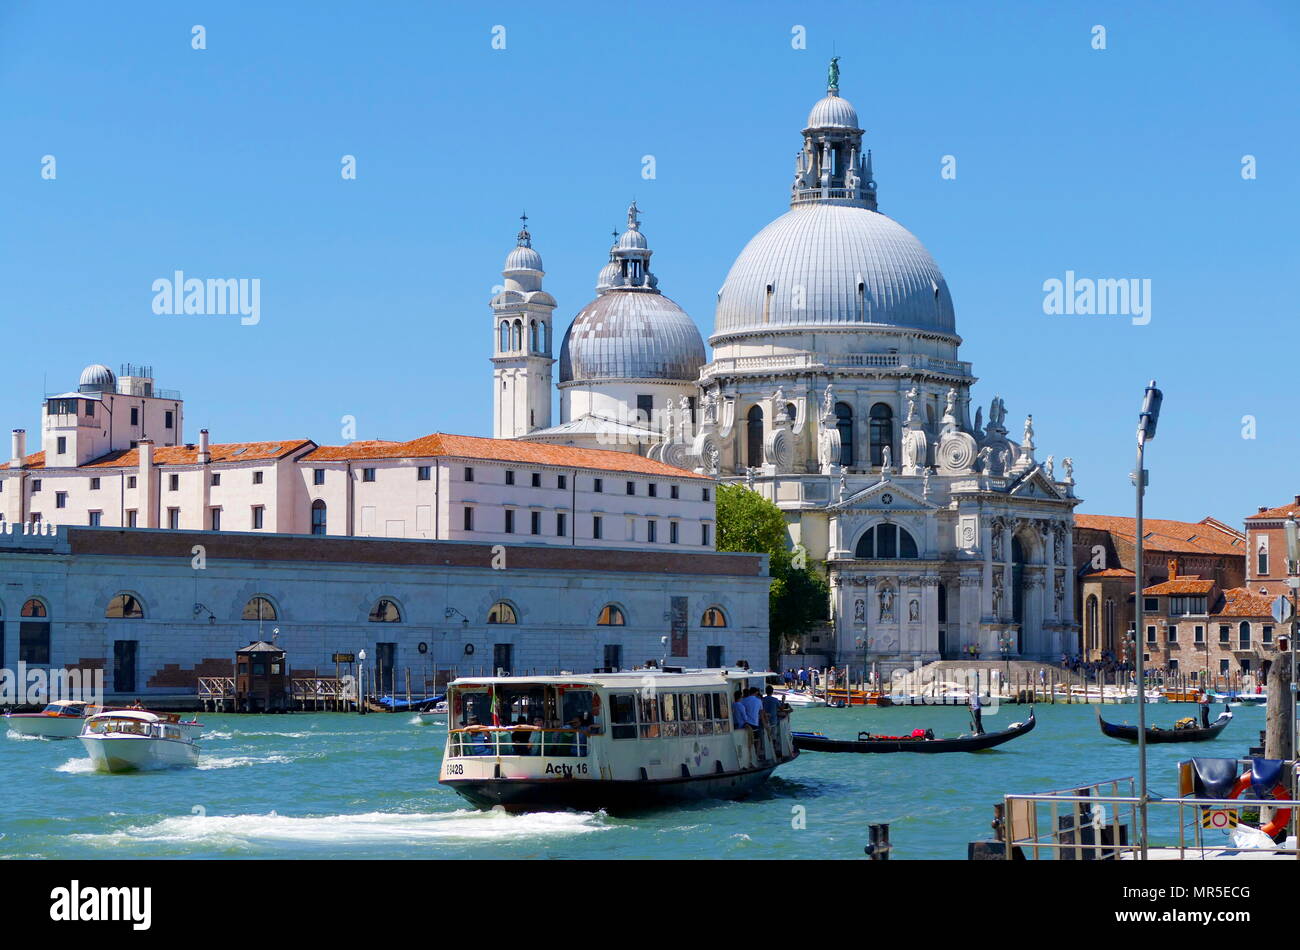 L'architecture Baroque de Santa Maria della Salute, l'église catholique romaine et la basilique à Venise, a été achevée en 1687 Banque D'Images